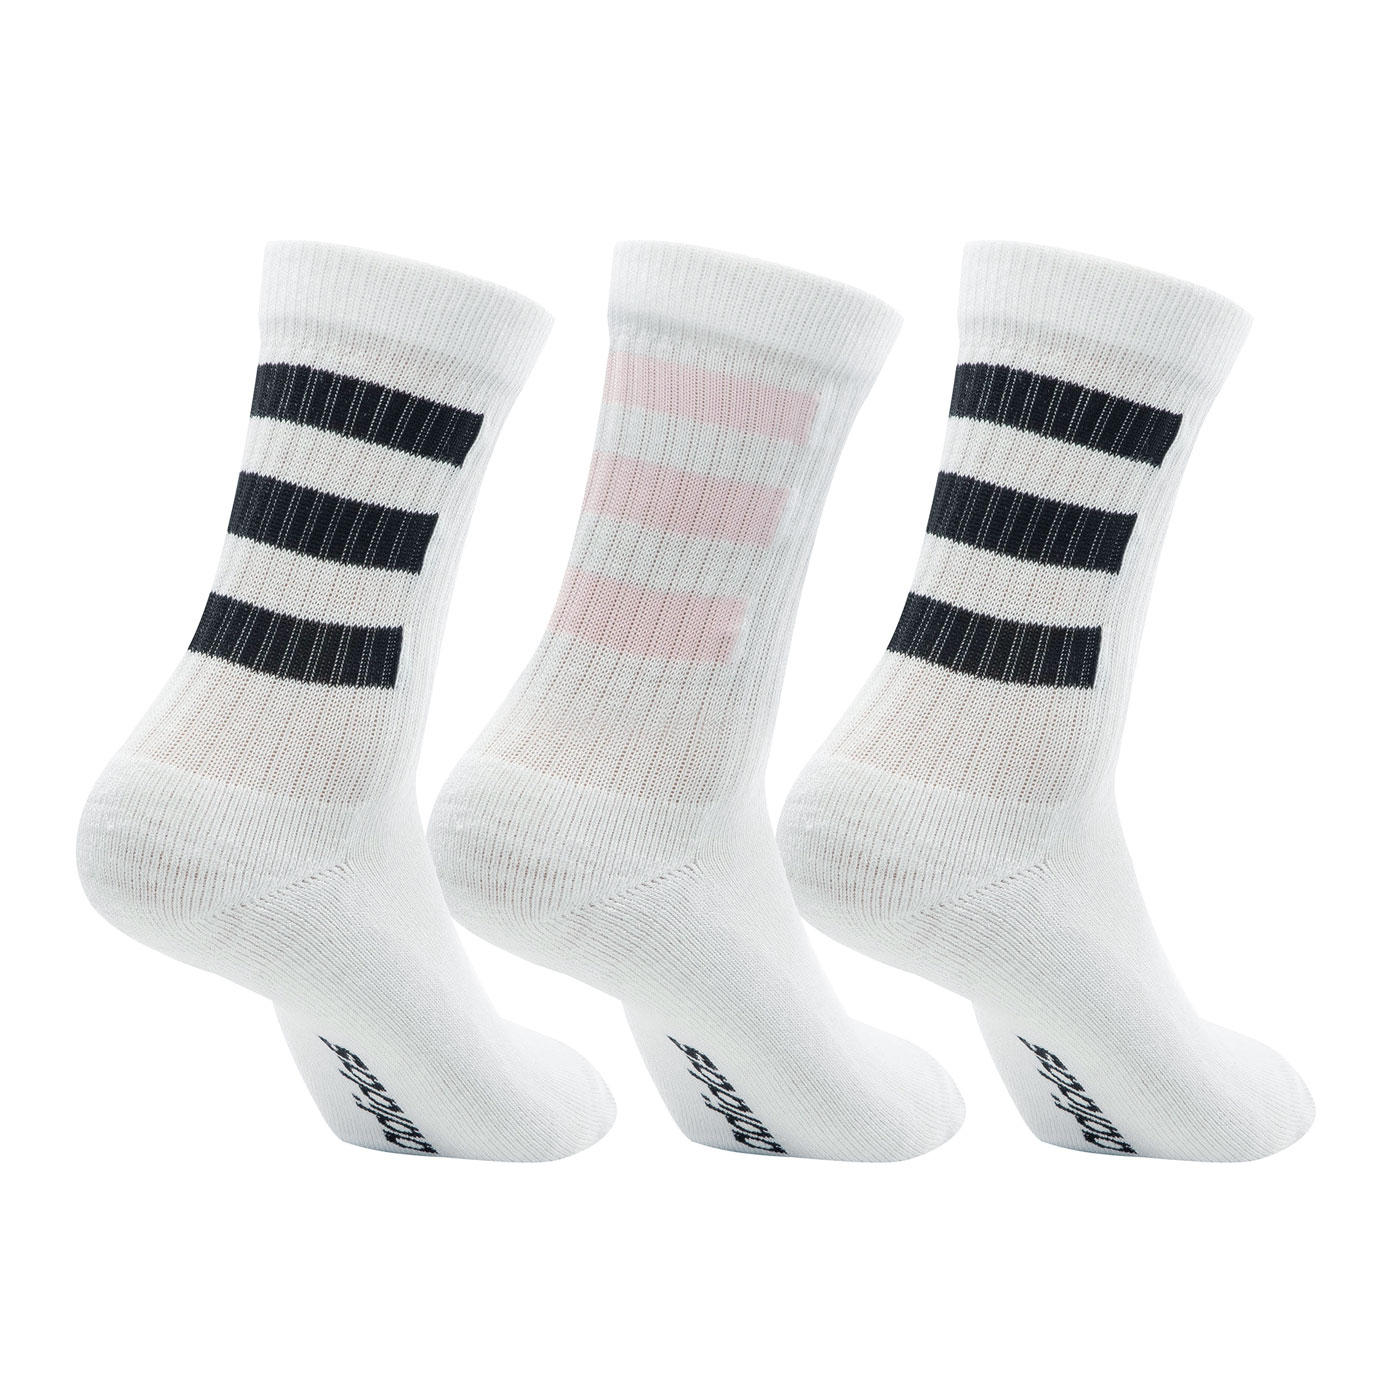 ADIDAS 襪子(三雙入) GN8889 - 白黑